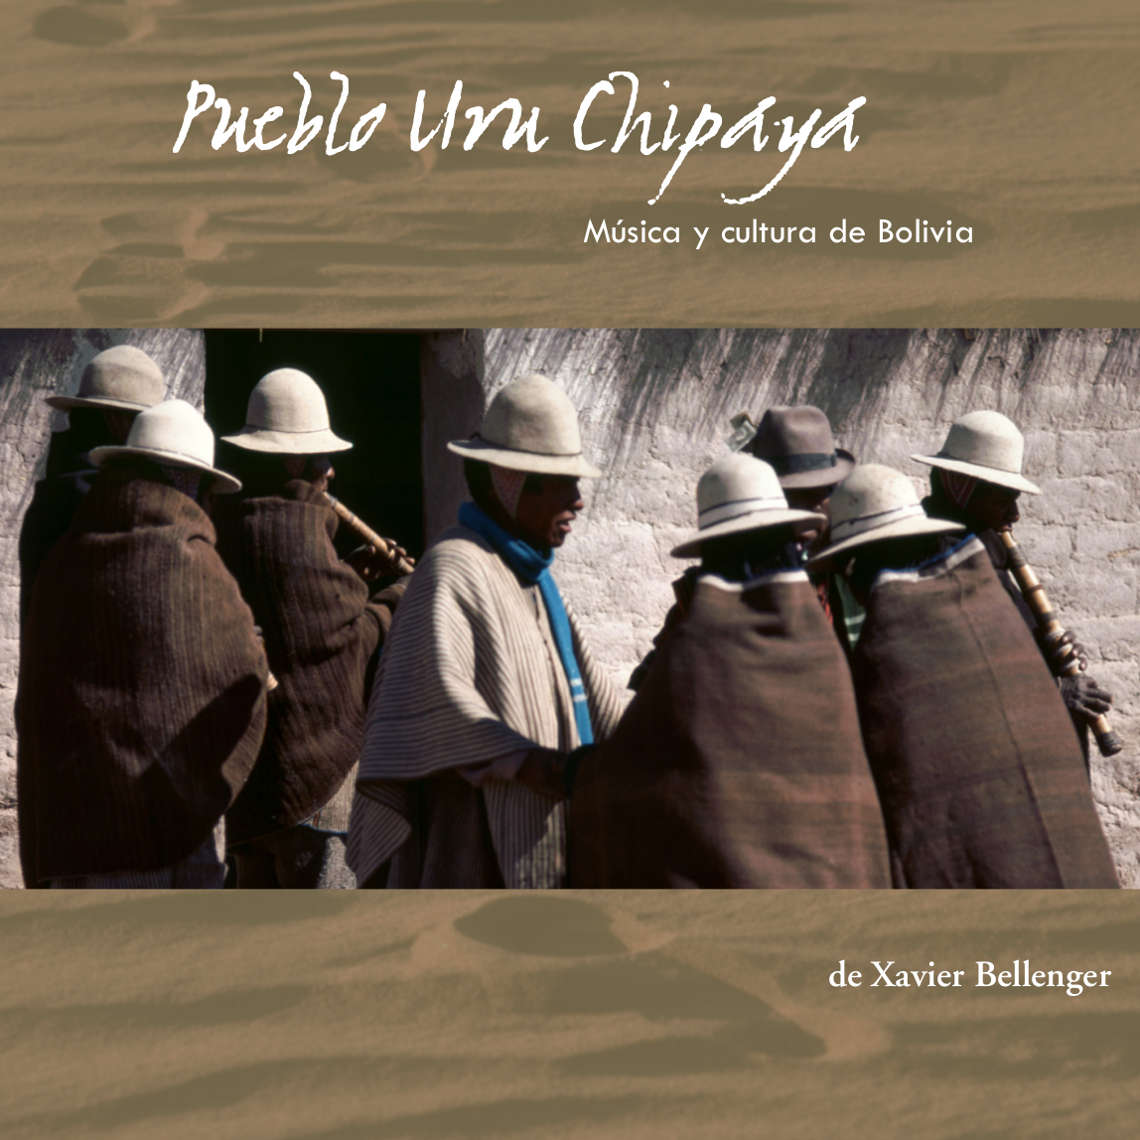 "Pueblo Uru Chipaya, Música y cultura de Bolivia" - CD audio de Xavier Bellenger